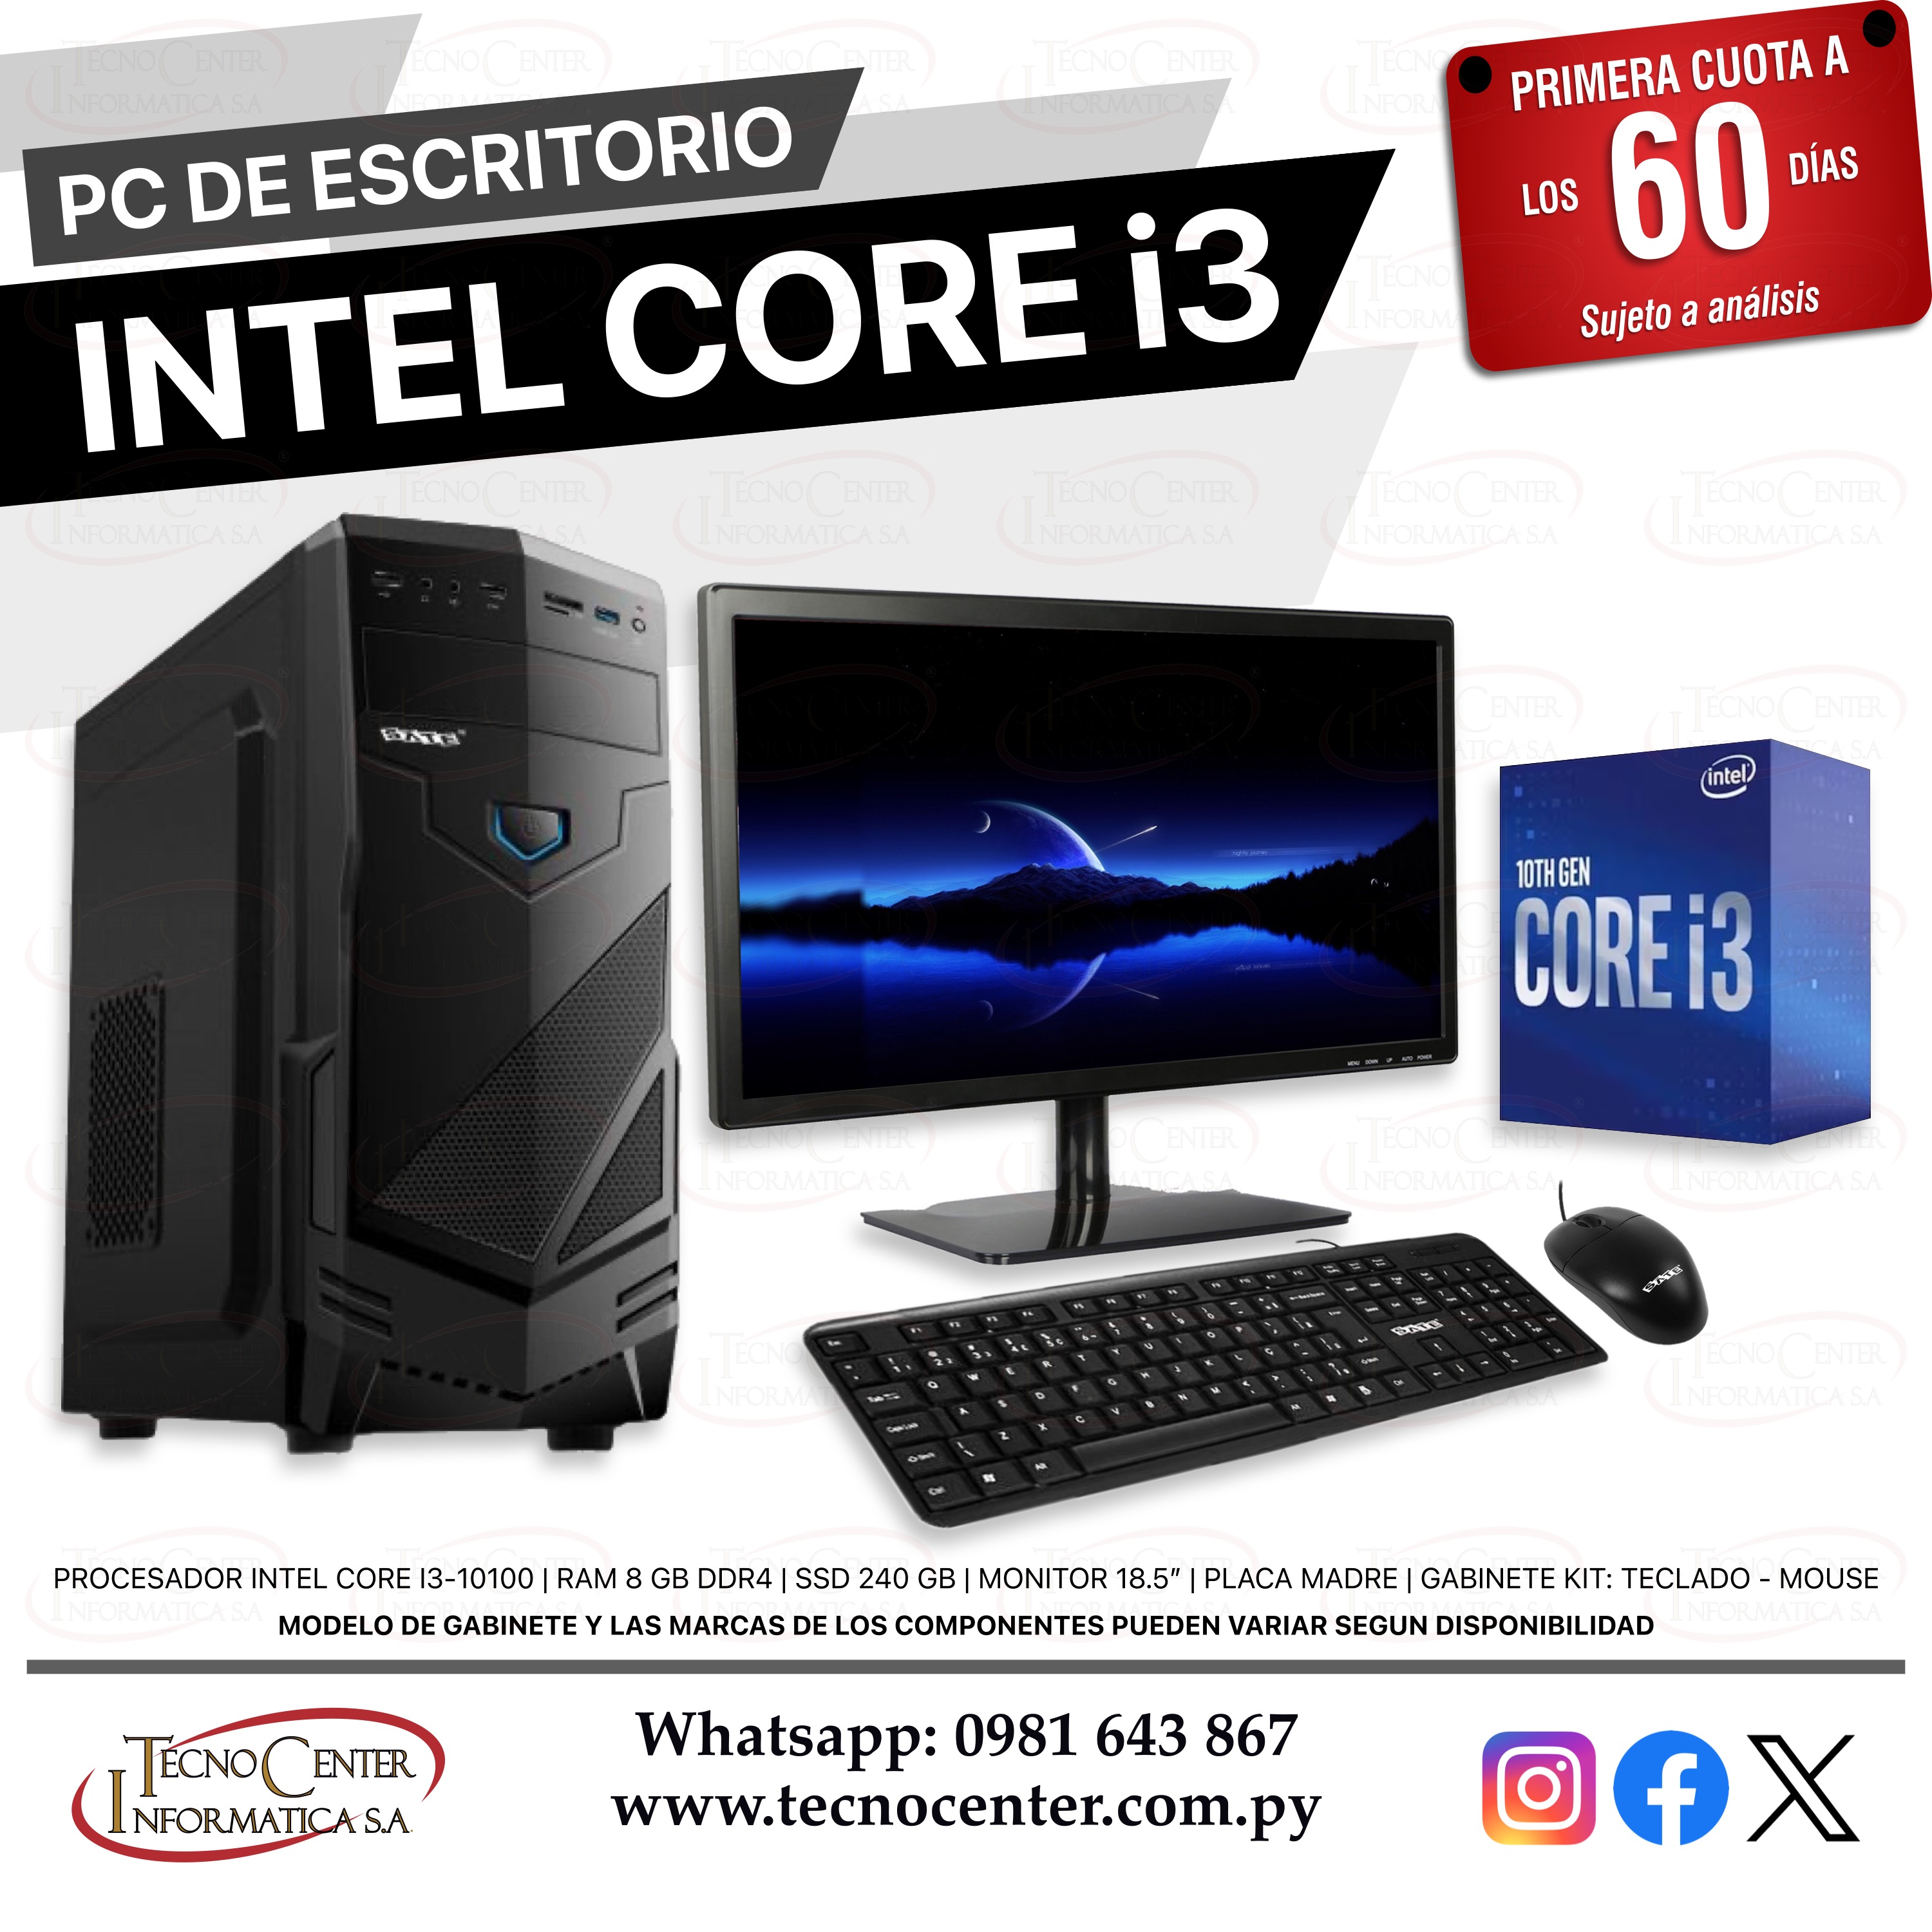 PC de Escritorio Intel Core i3 SSD 240 GB